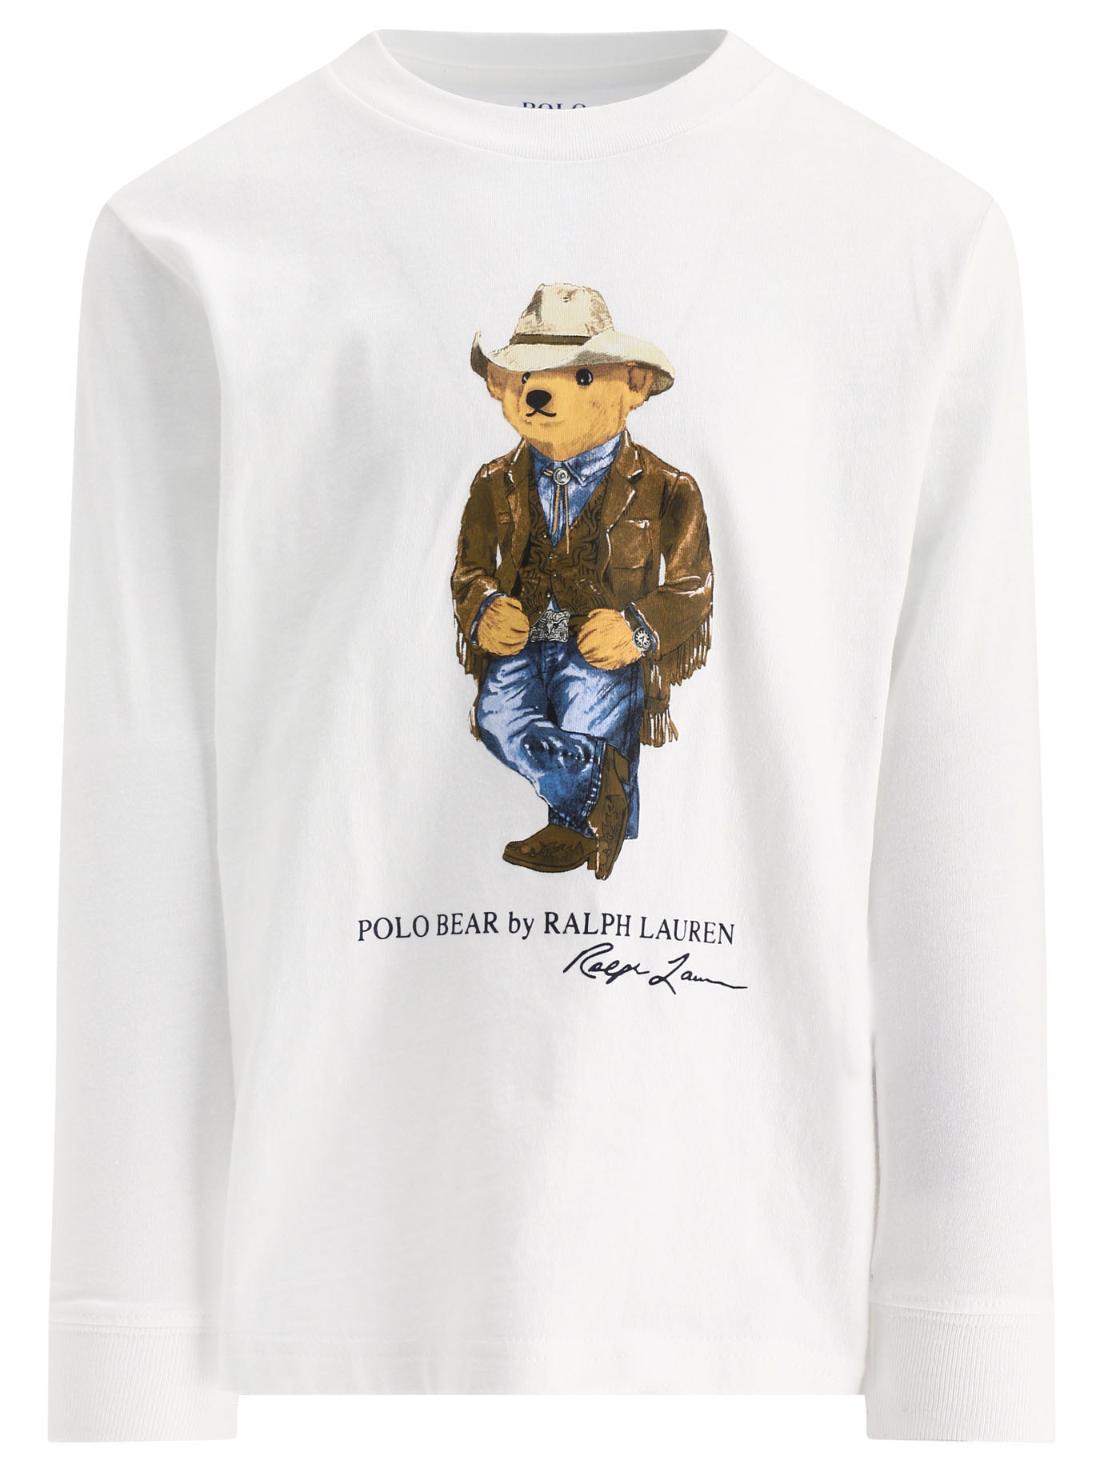 [해외직구 관부가세 포함] Ralph Lauren Kids 화이트 "Polo Bear" t셔츠 858885-001WHITE